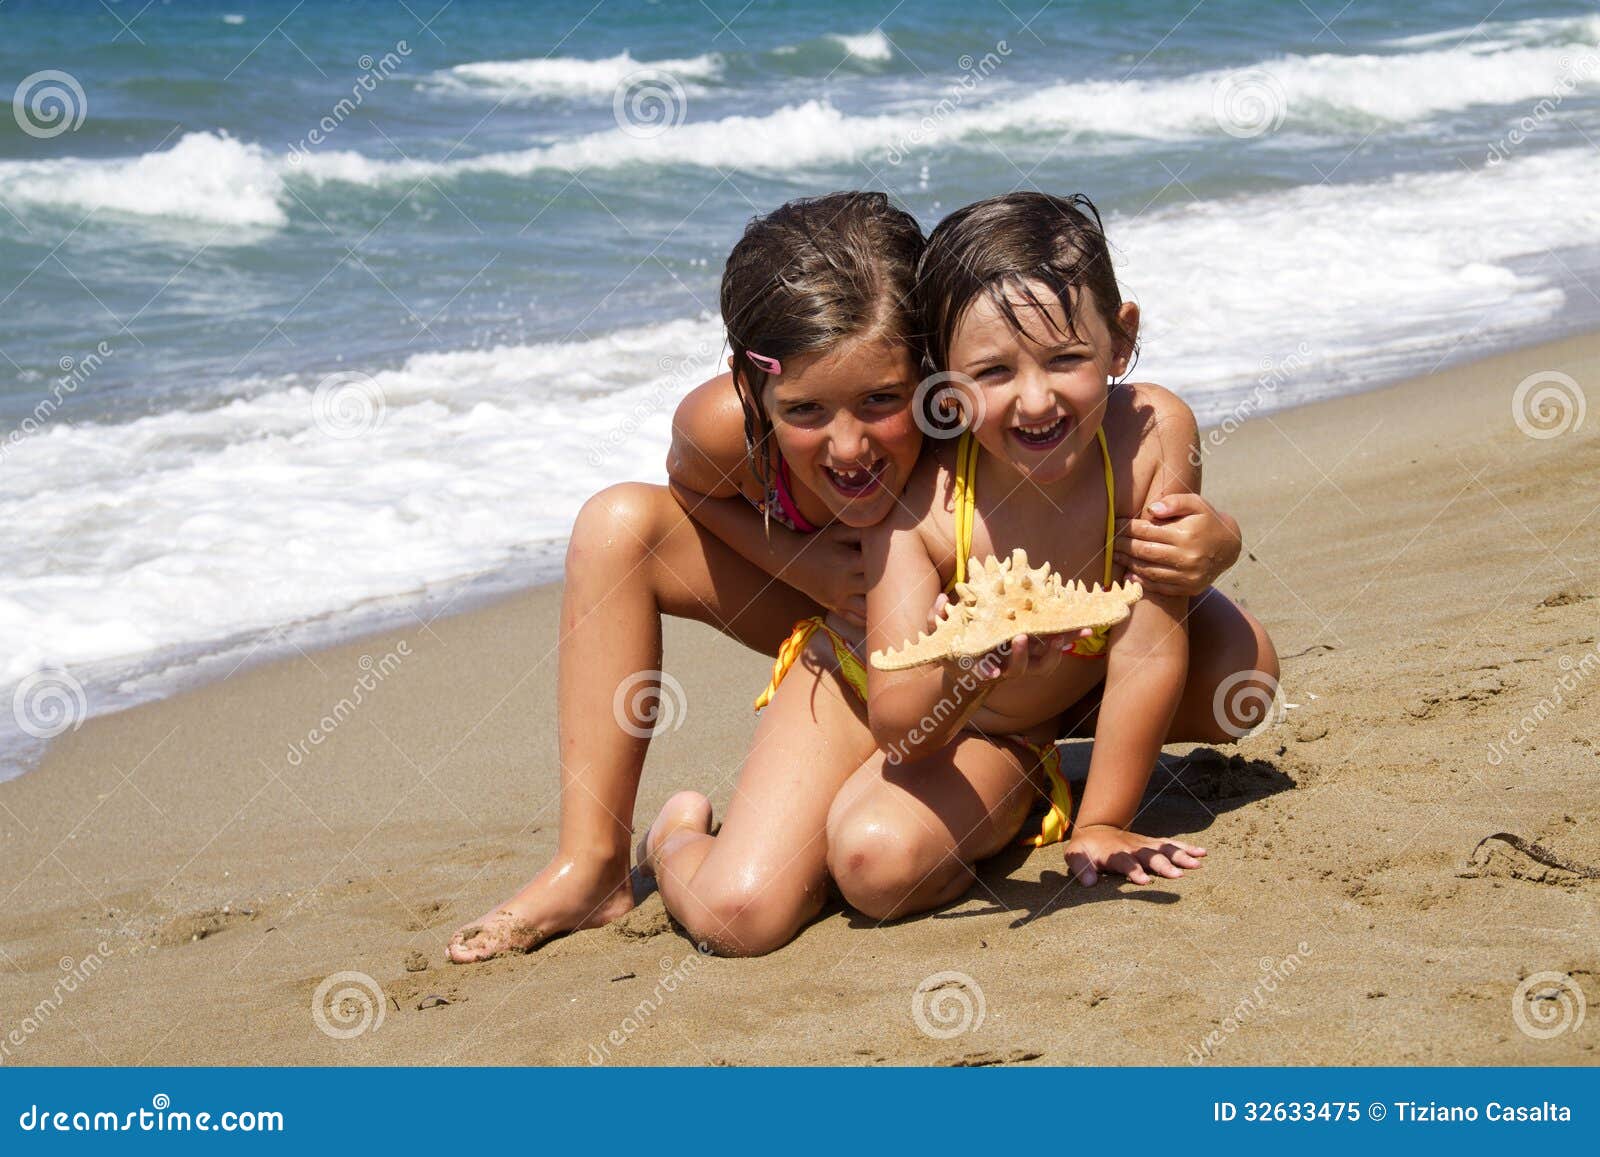 с детьми голым на пляж фото 69